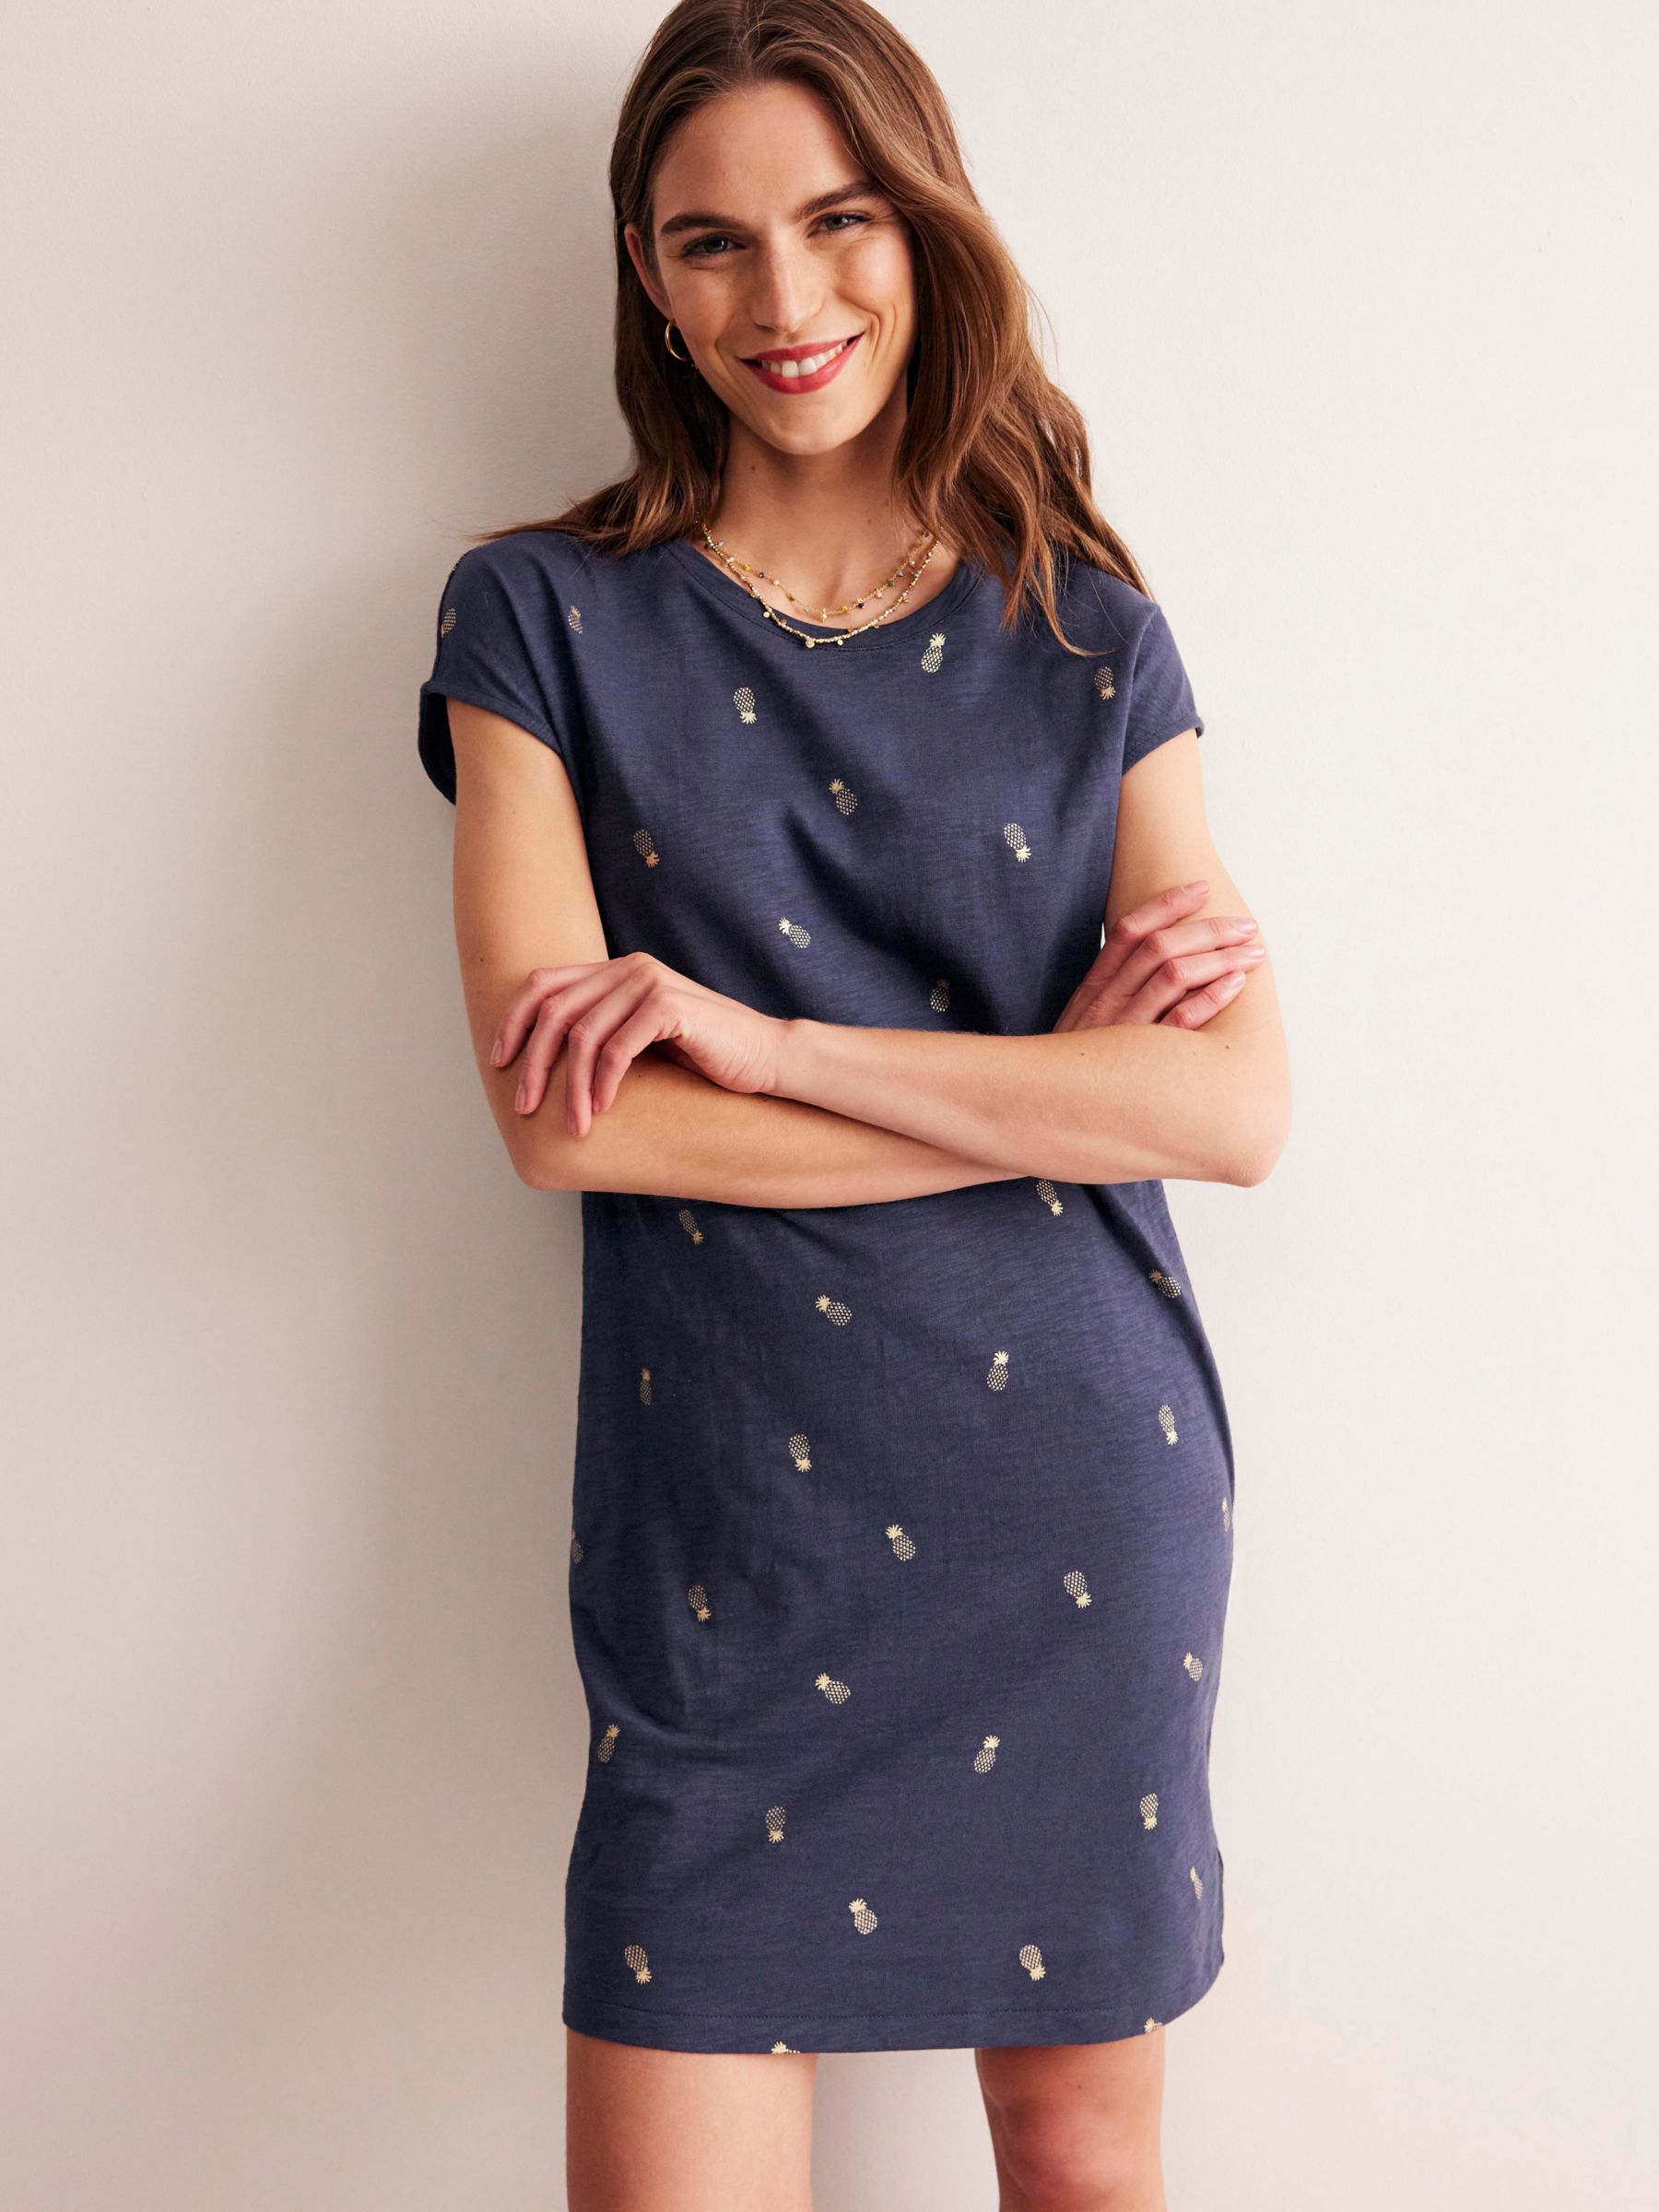 Boden Leah Pineapple Foil Print Jersey T-Shirt Dress, Navy, 8